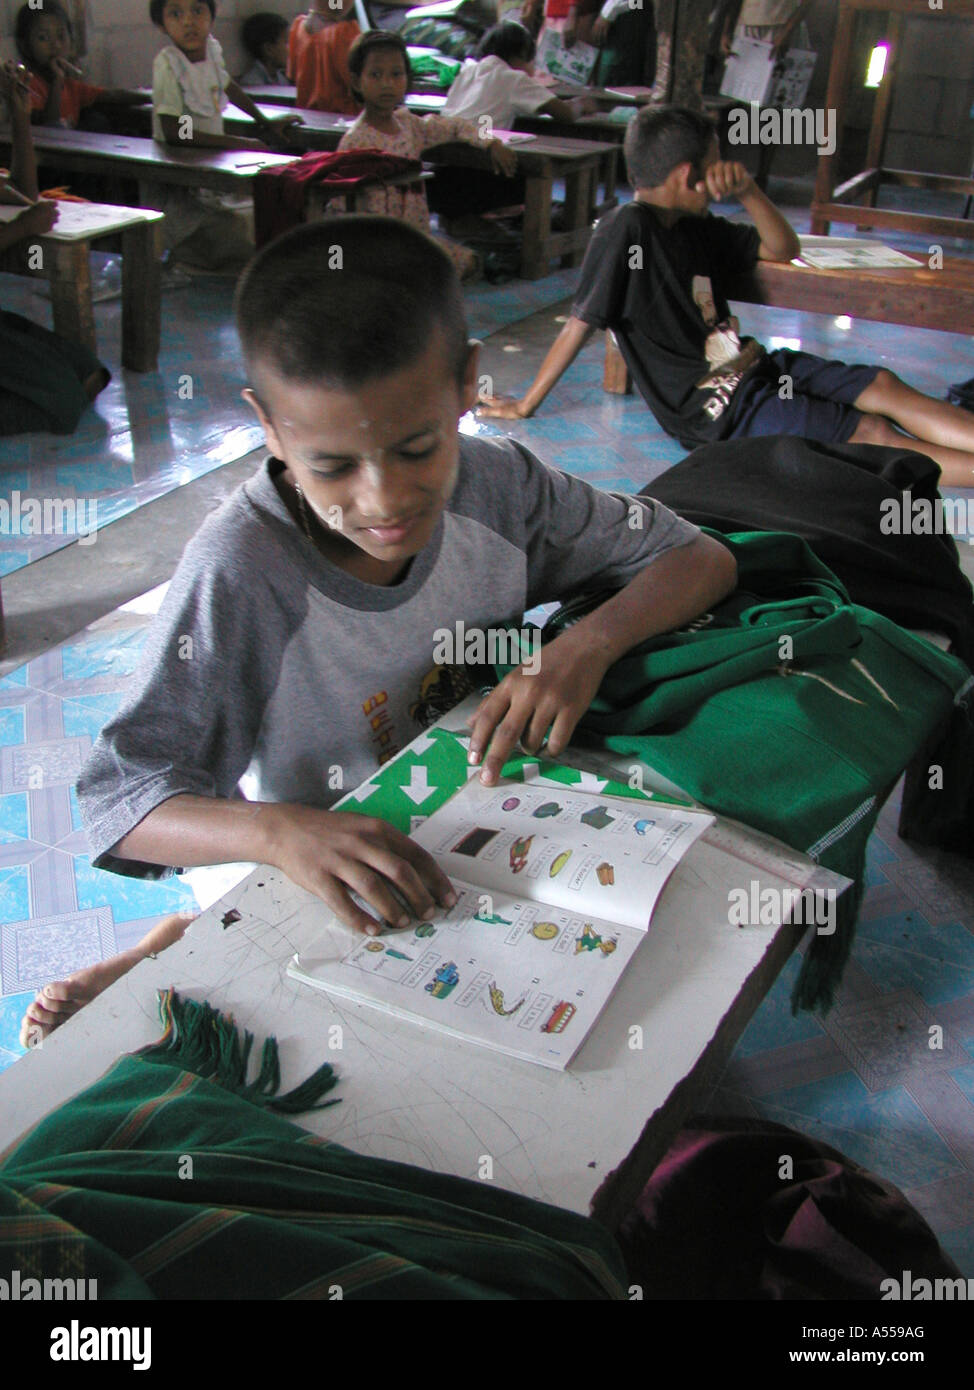 Painet2781 IP 9674 ragazzo lettura thailandia scuola musulmana per i profughi birmani mae sot paese nazione in via di sviluppo meno Foto Stock